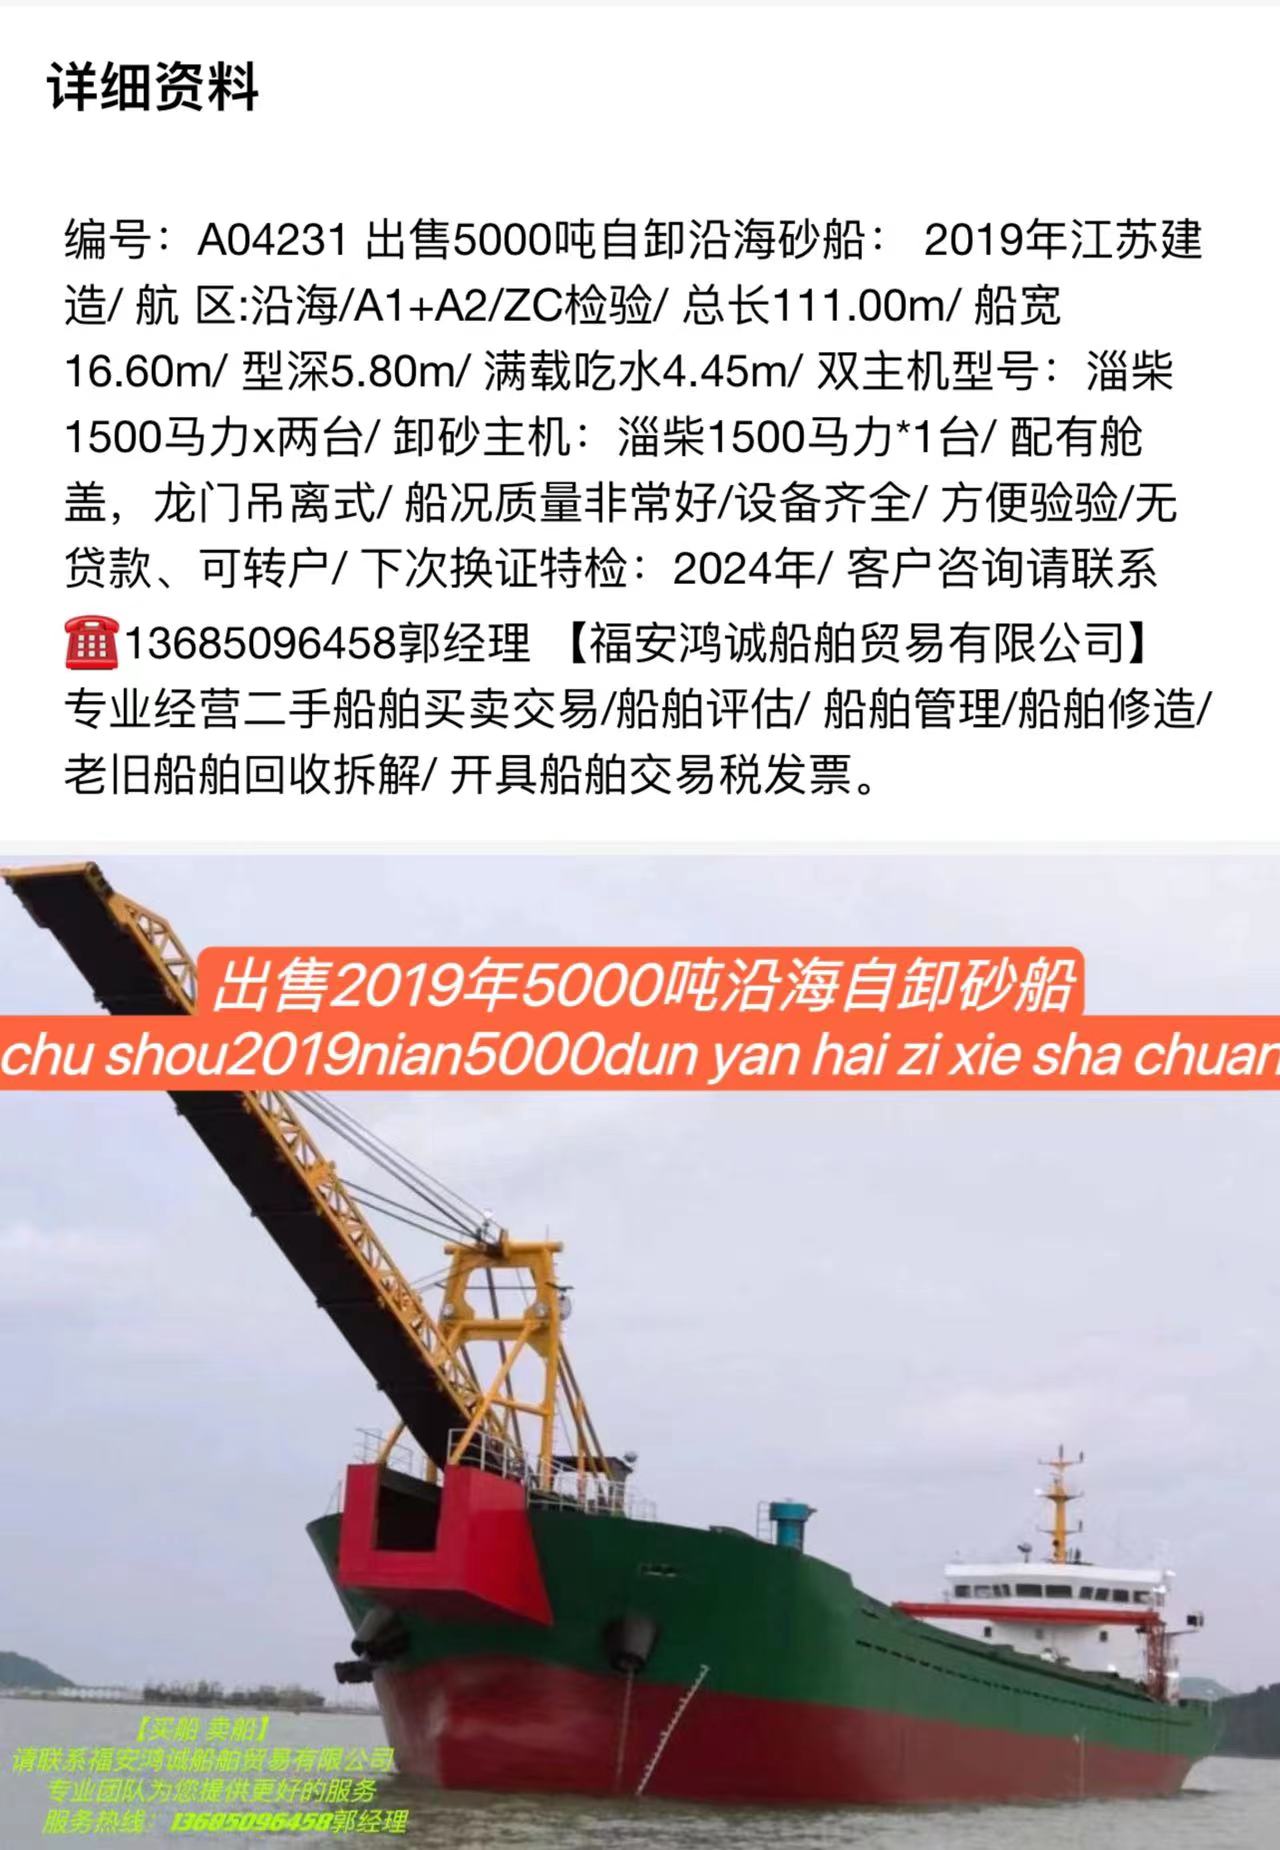 出售5000吨自卸沿海砂船： 2019年6月江苏建造/